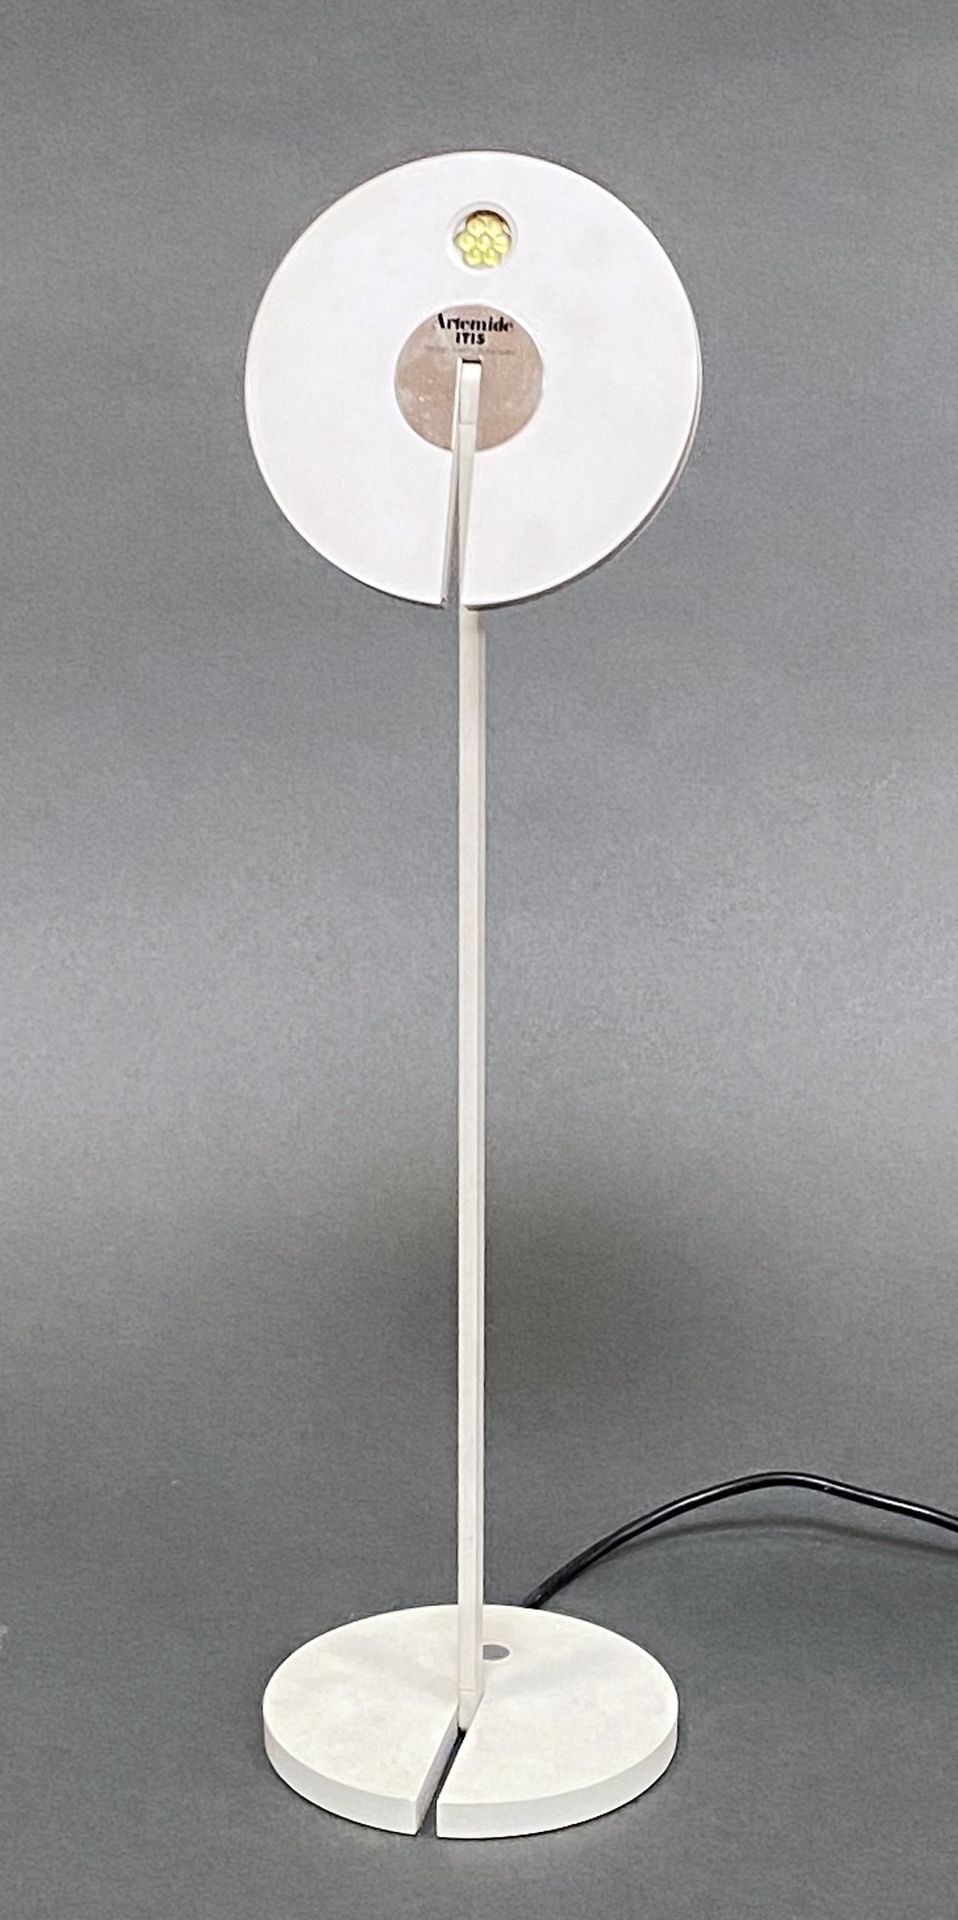 Null 这是一盏白色漆面金属台灯，署名深泽直人，Artemide 版。还包括一个皮革和熏黑金属小桌灯。高 46 厘米